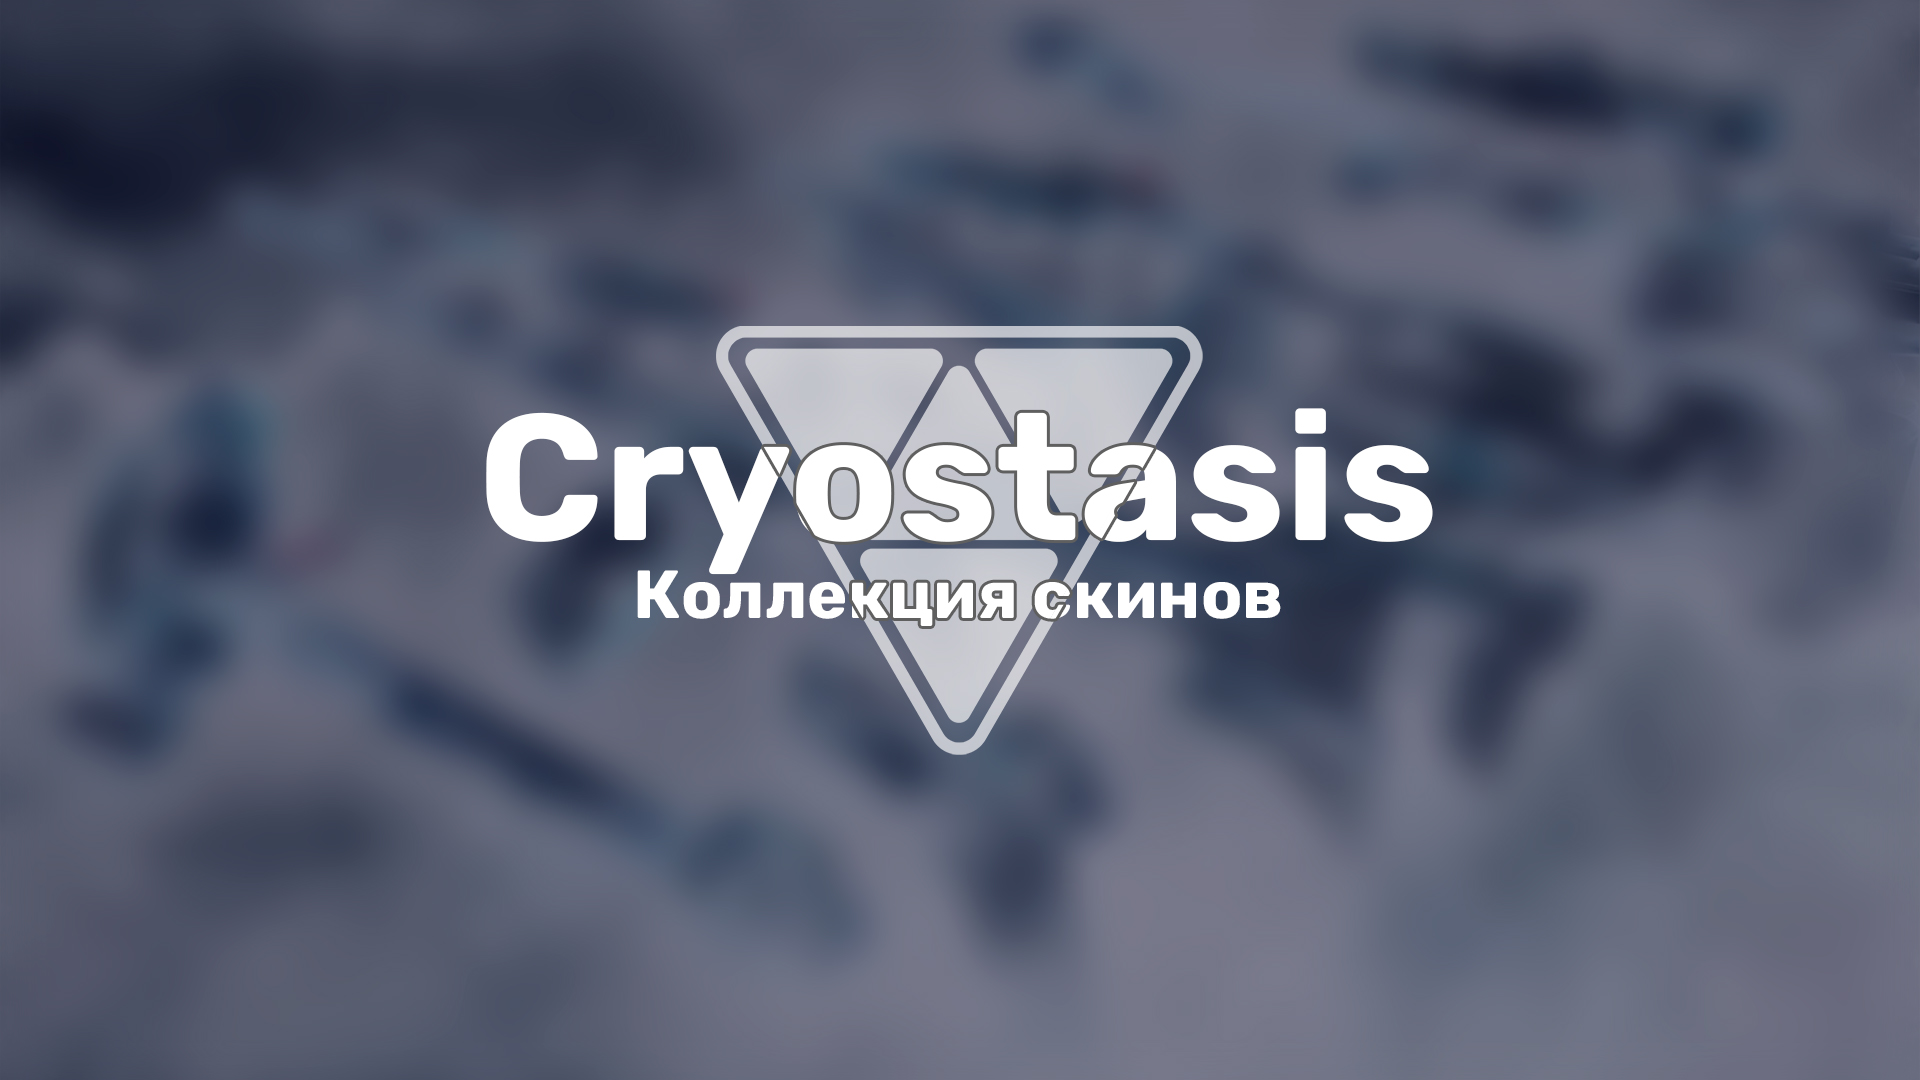 Разработчики Valorant анонсировали новую необычную коллекцию скинов с уникальной механикой — «Cryostasis».